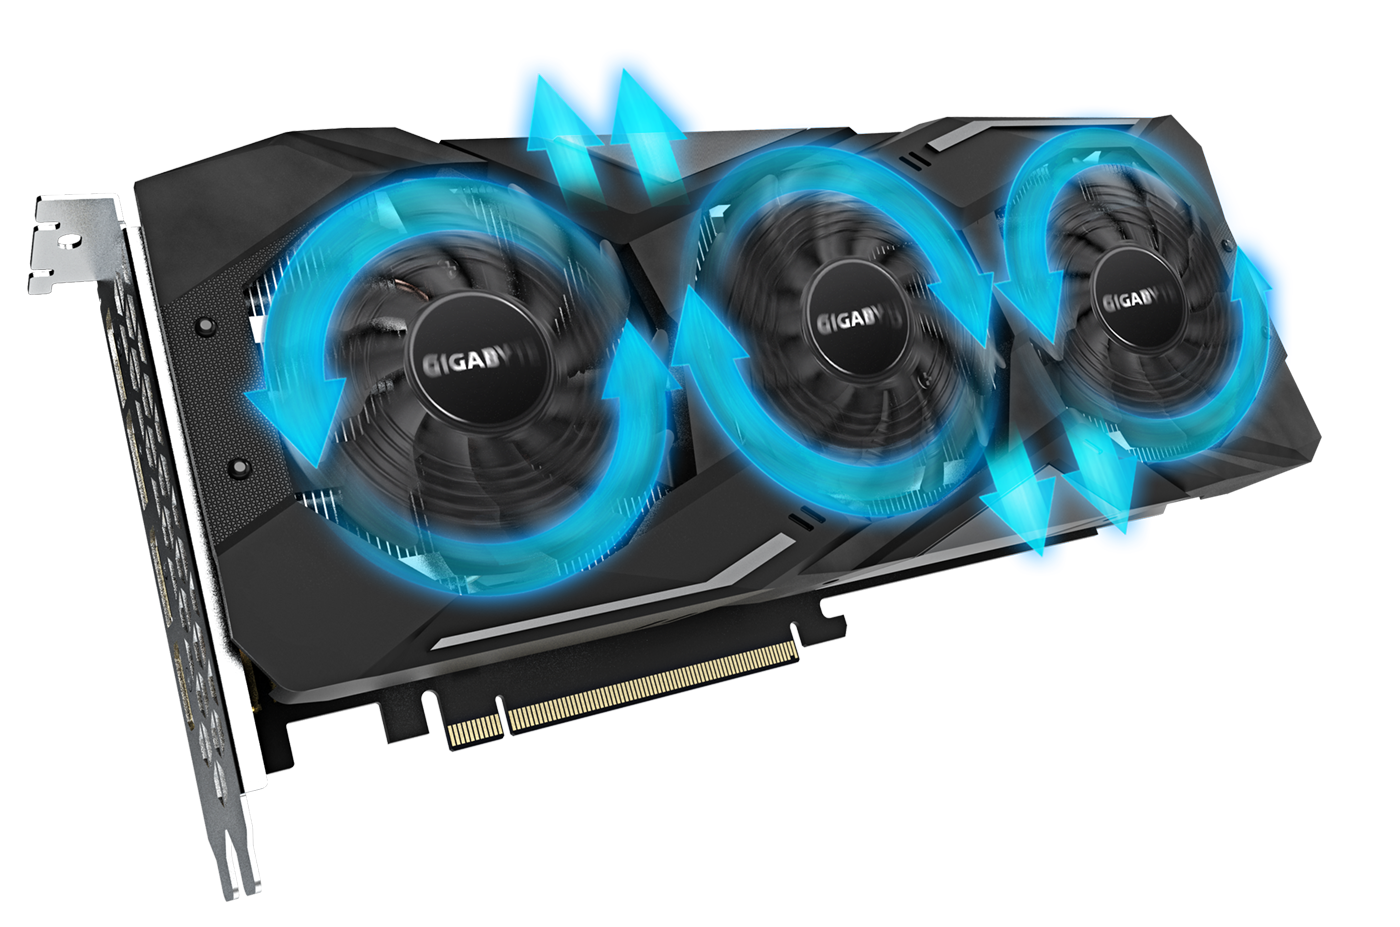 Gigabyte menghadirkan jajaran Radeon RX 5700 OC dan RX 5700 XT OC